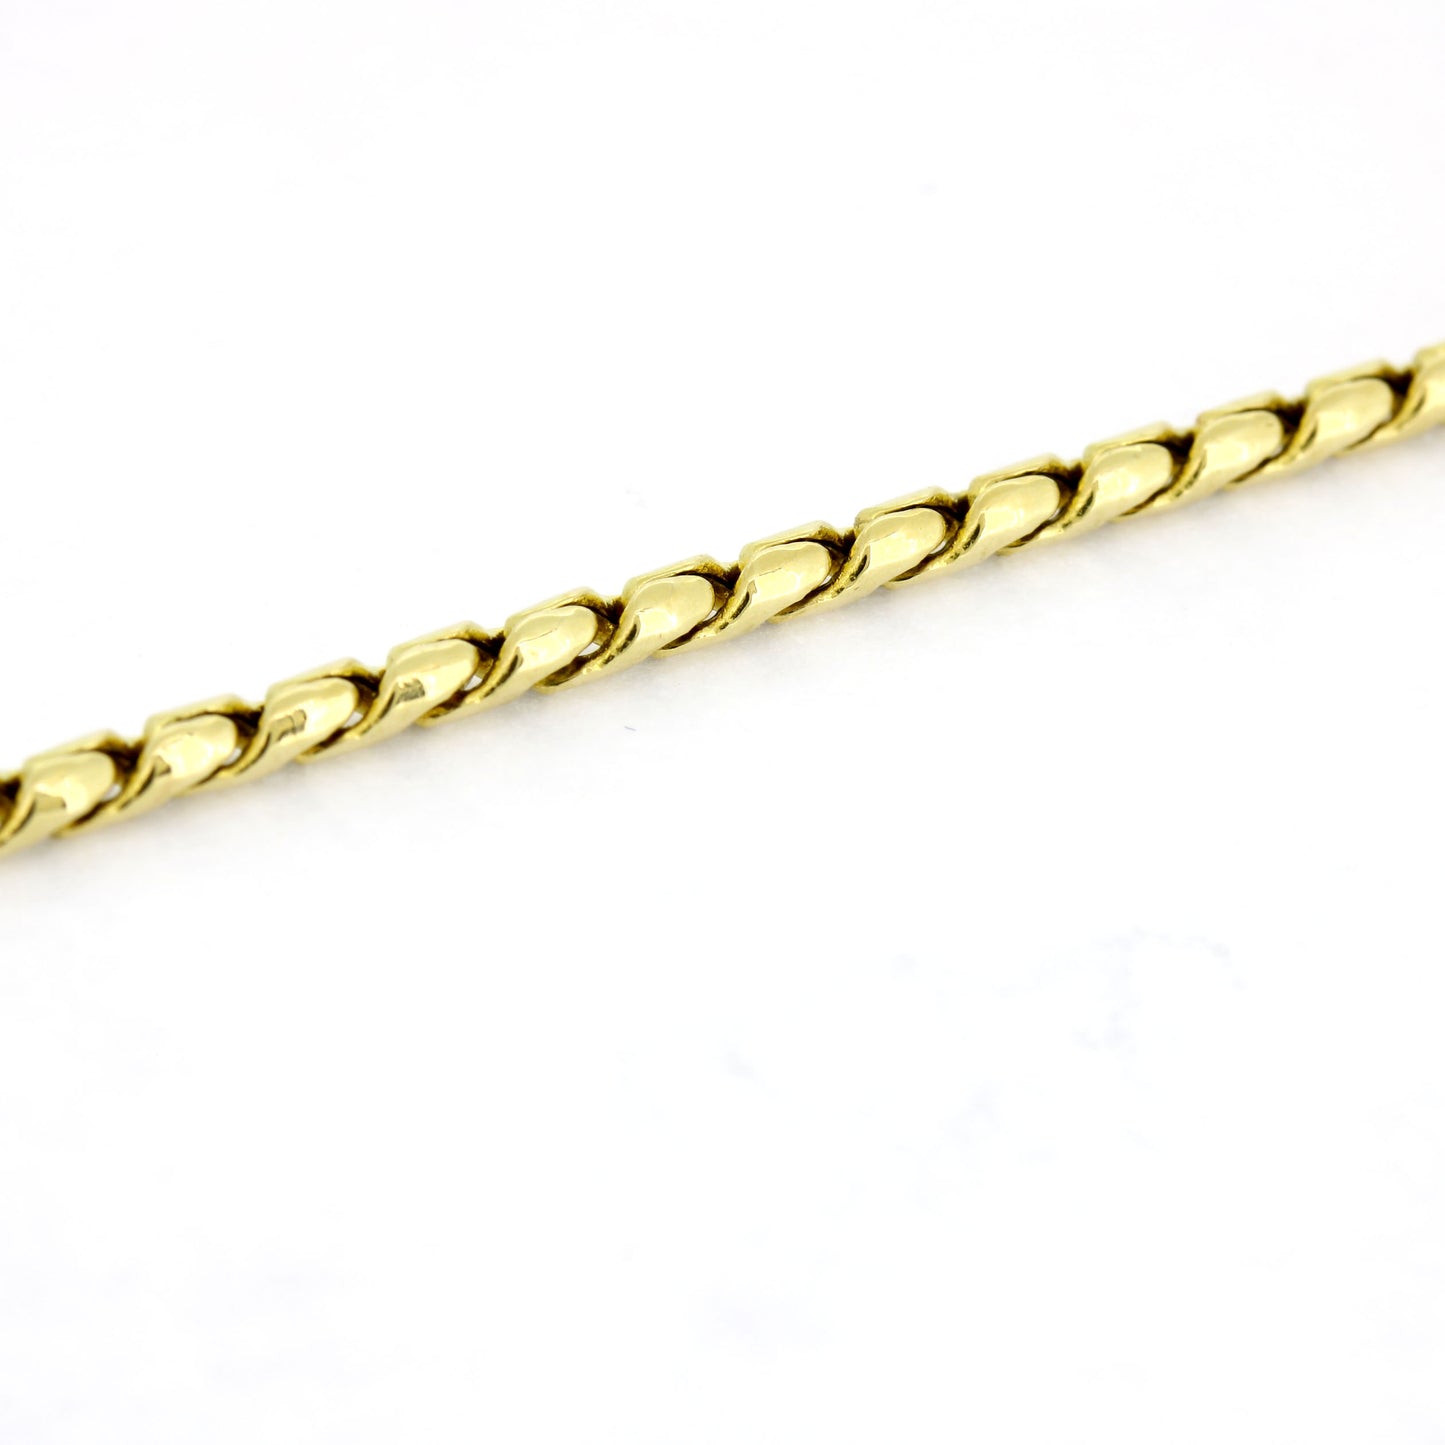 Schlangen Kette 585 Gold 14 Kt Gelbgold - Kettenlänge 45 cm - Wert 820,-